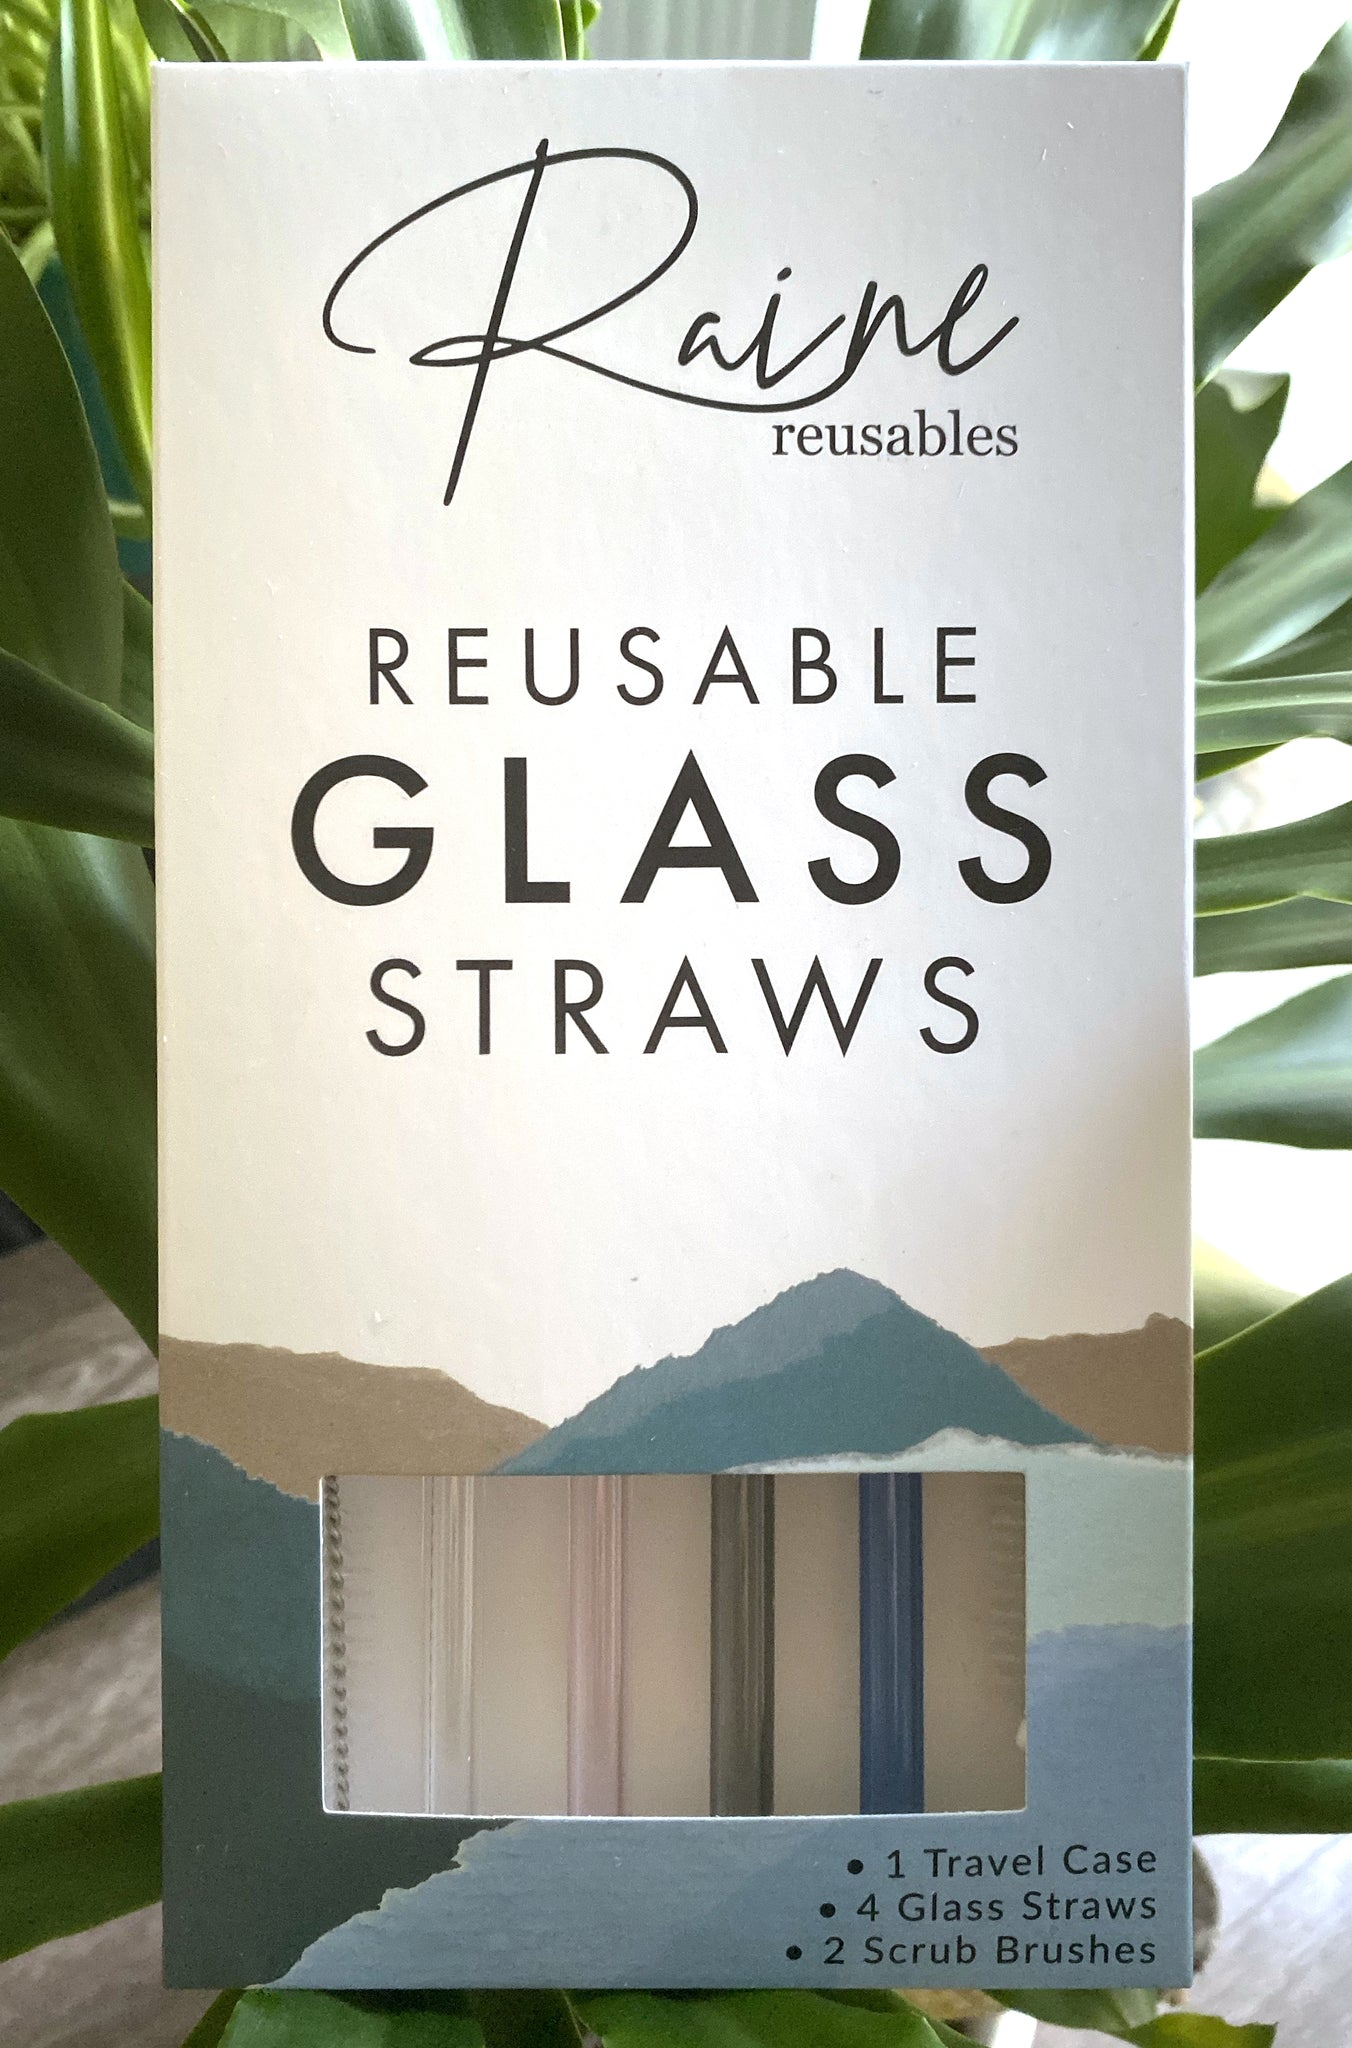 Crystal Clear Glass straw set clear best glass straws sturdy